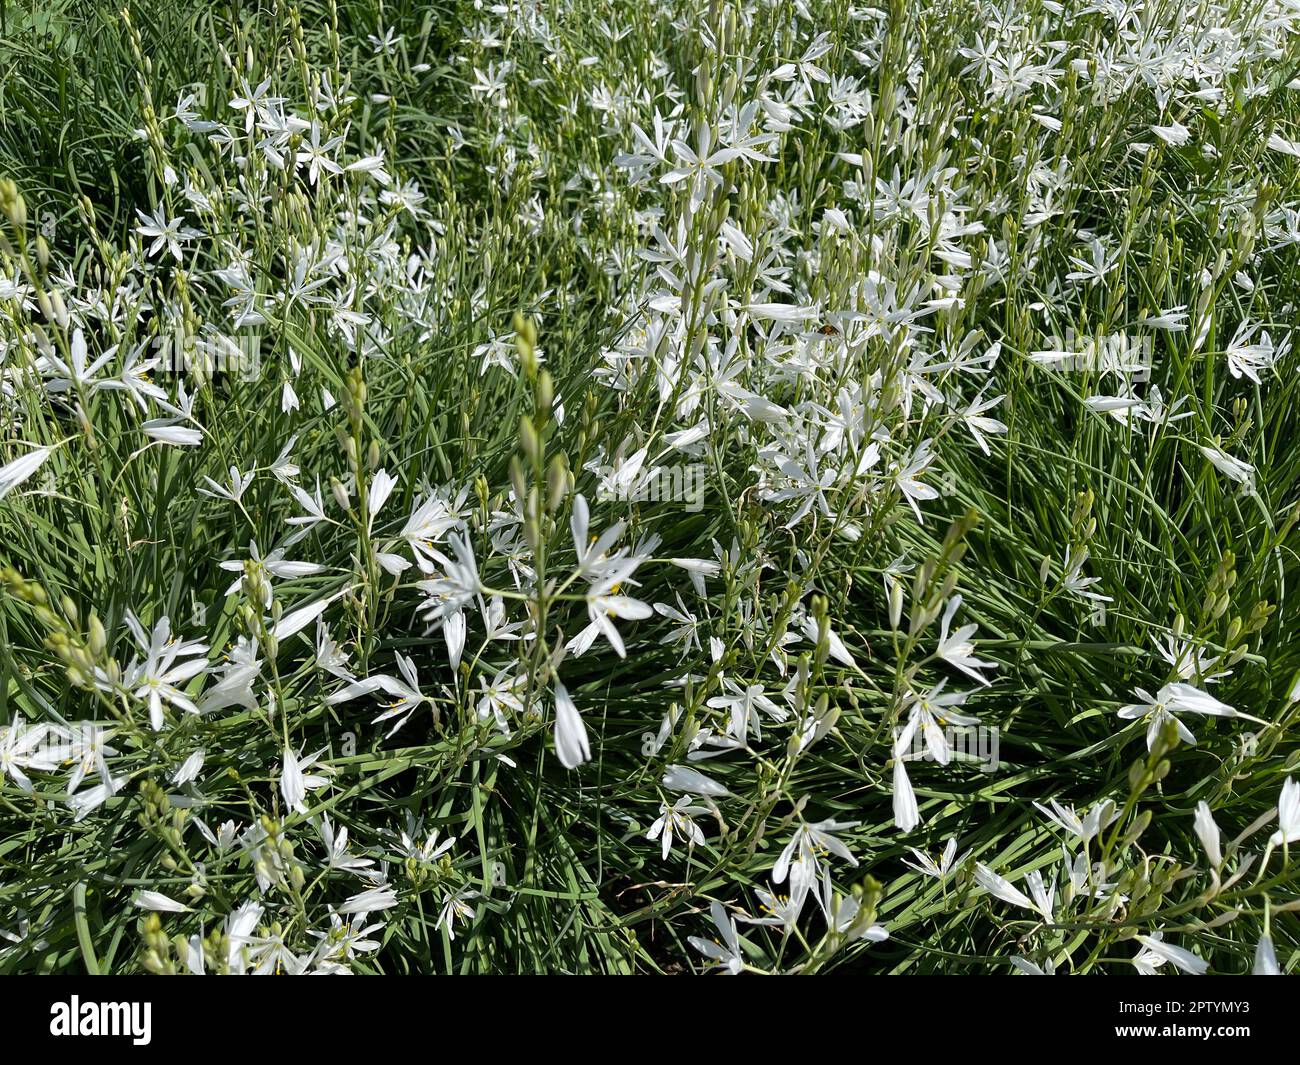 Astlose, Graslilie, Anthericum ist eine Blume mit weissen Blueten. Branchless, Grass Lily, Anthericum is a flower with white blossoms. Stock Photo